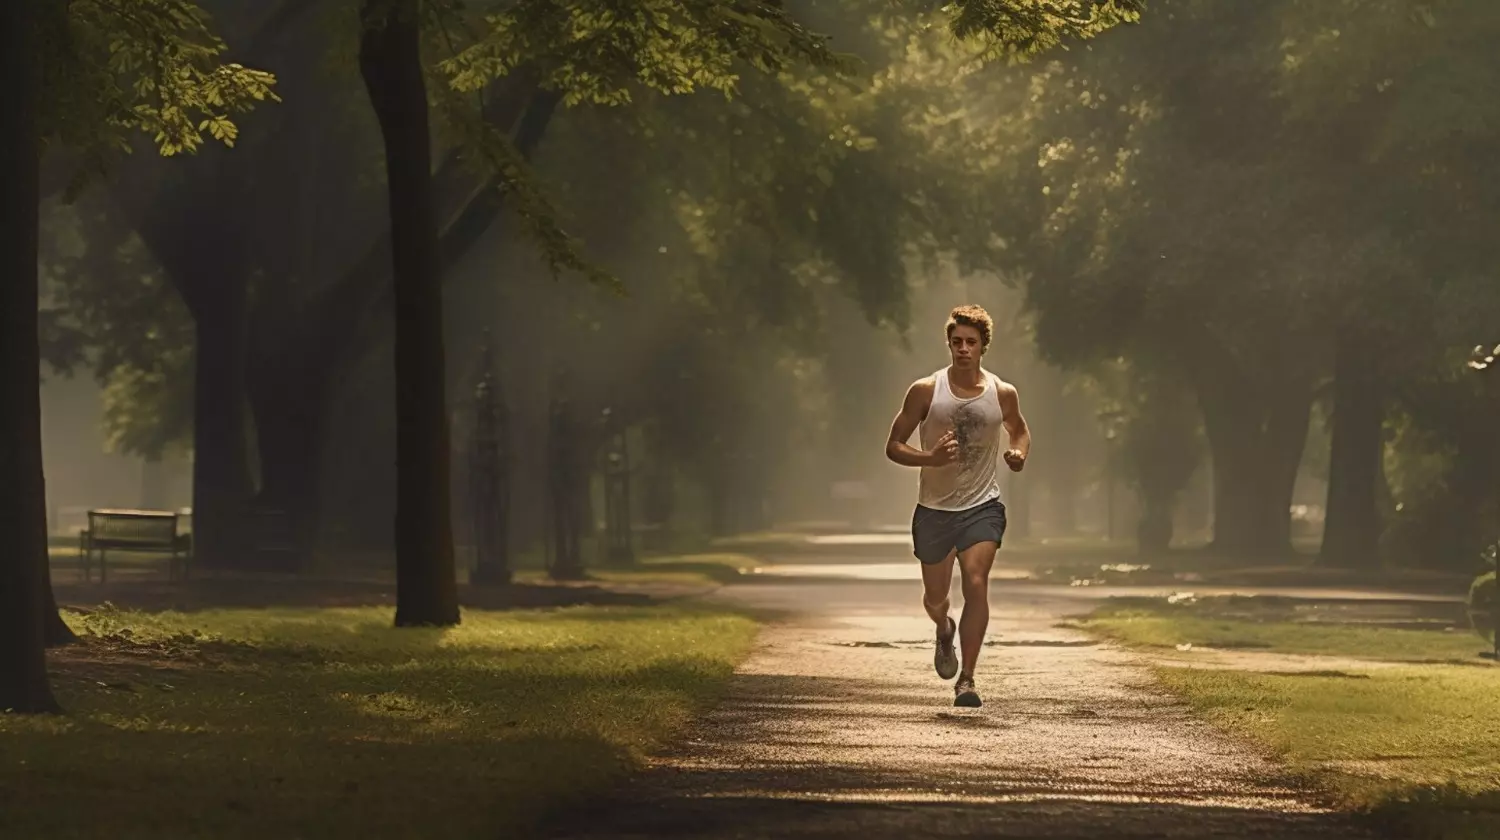 Изометрические упражнения для снижения кровяного давления оказались на 98% эффективнее, чем кардио, например, бег